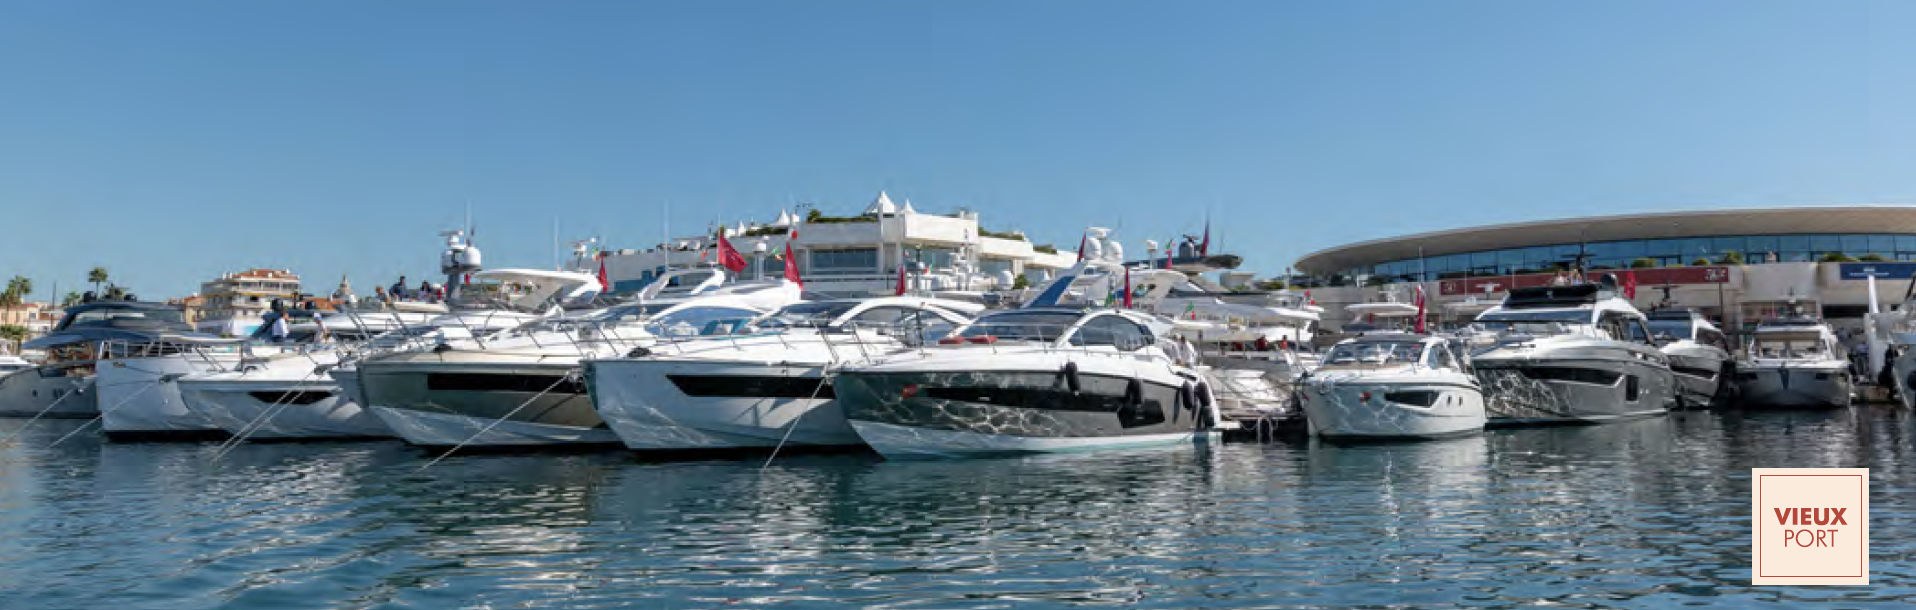 Manca solo un mese all’inaugurazione dello yachting festival di Cannes